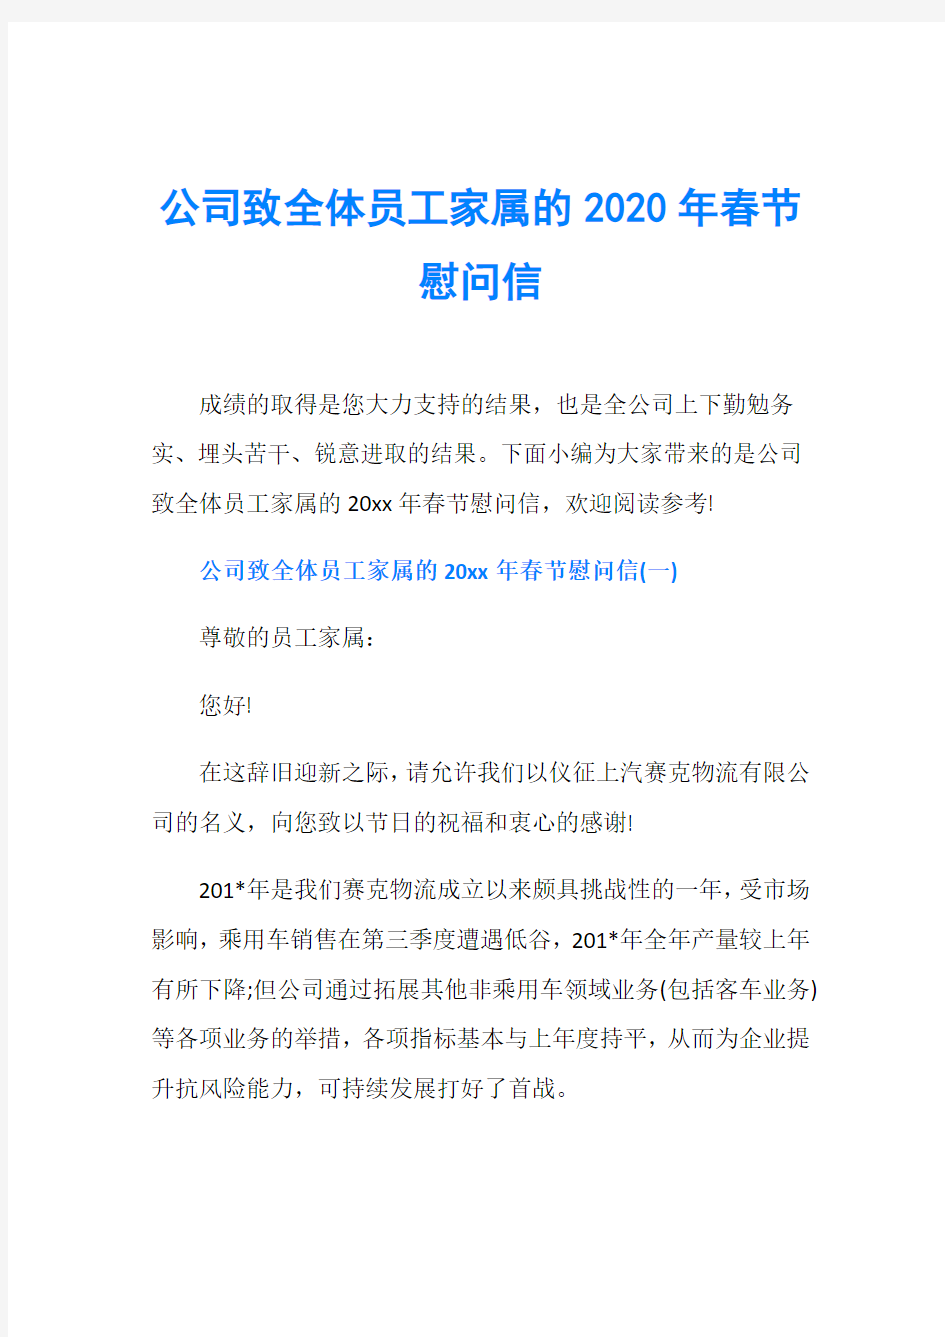 公司致全体员工家属的2020年春节慰问信